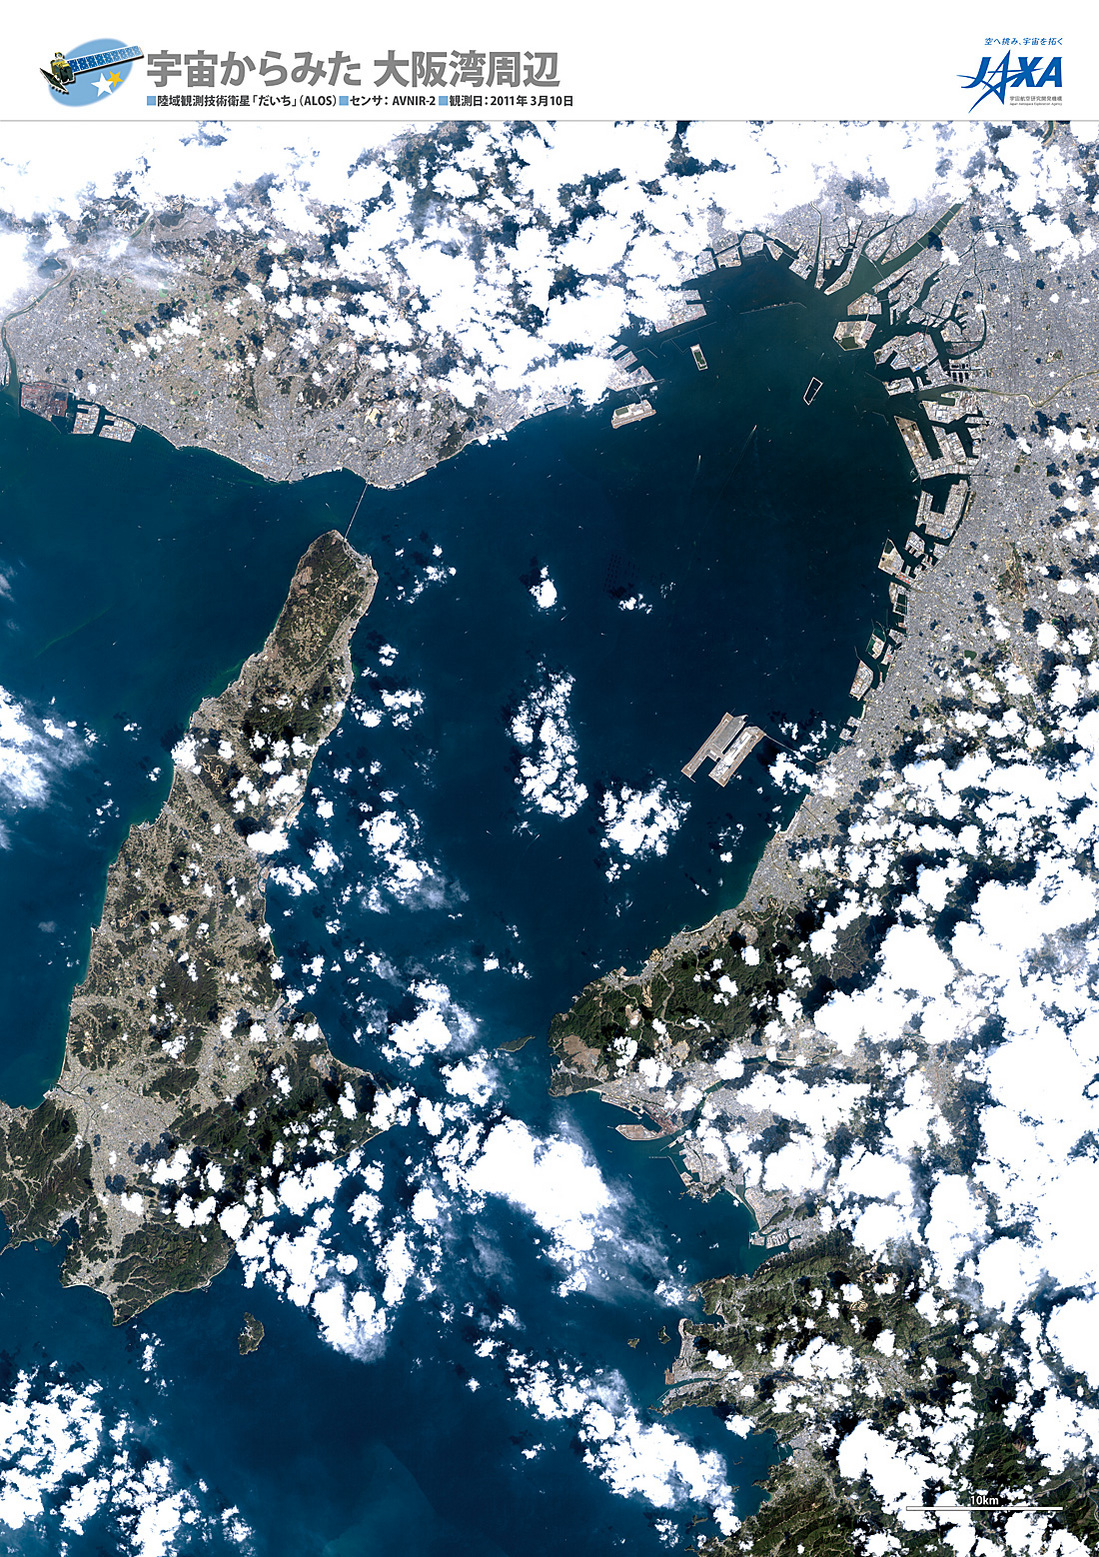 だいちから見た日本の都市 大阪湾周辺:衛星画像（ポスター仕上げ）